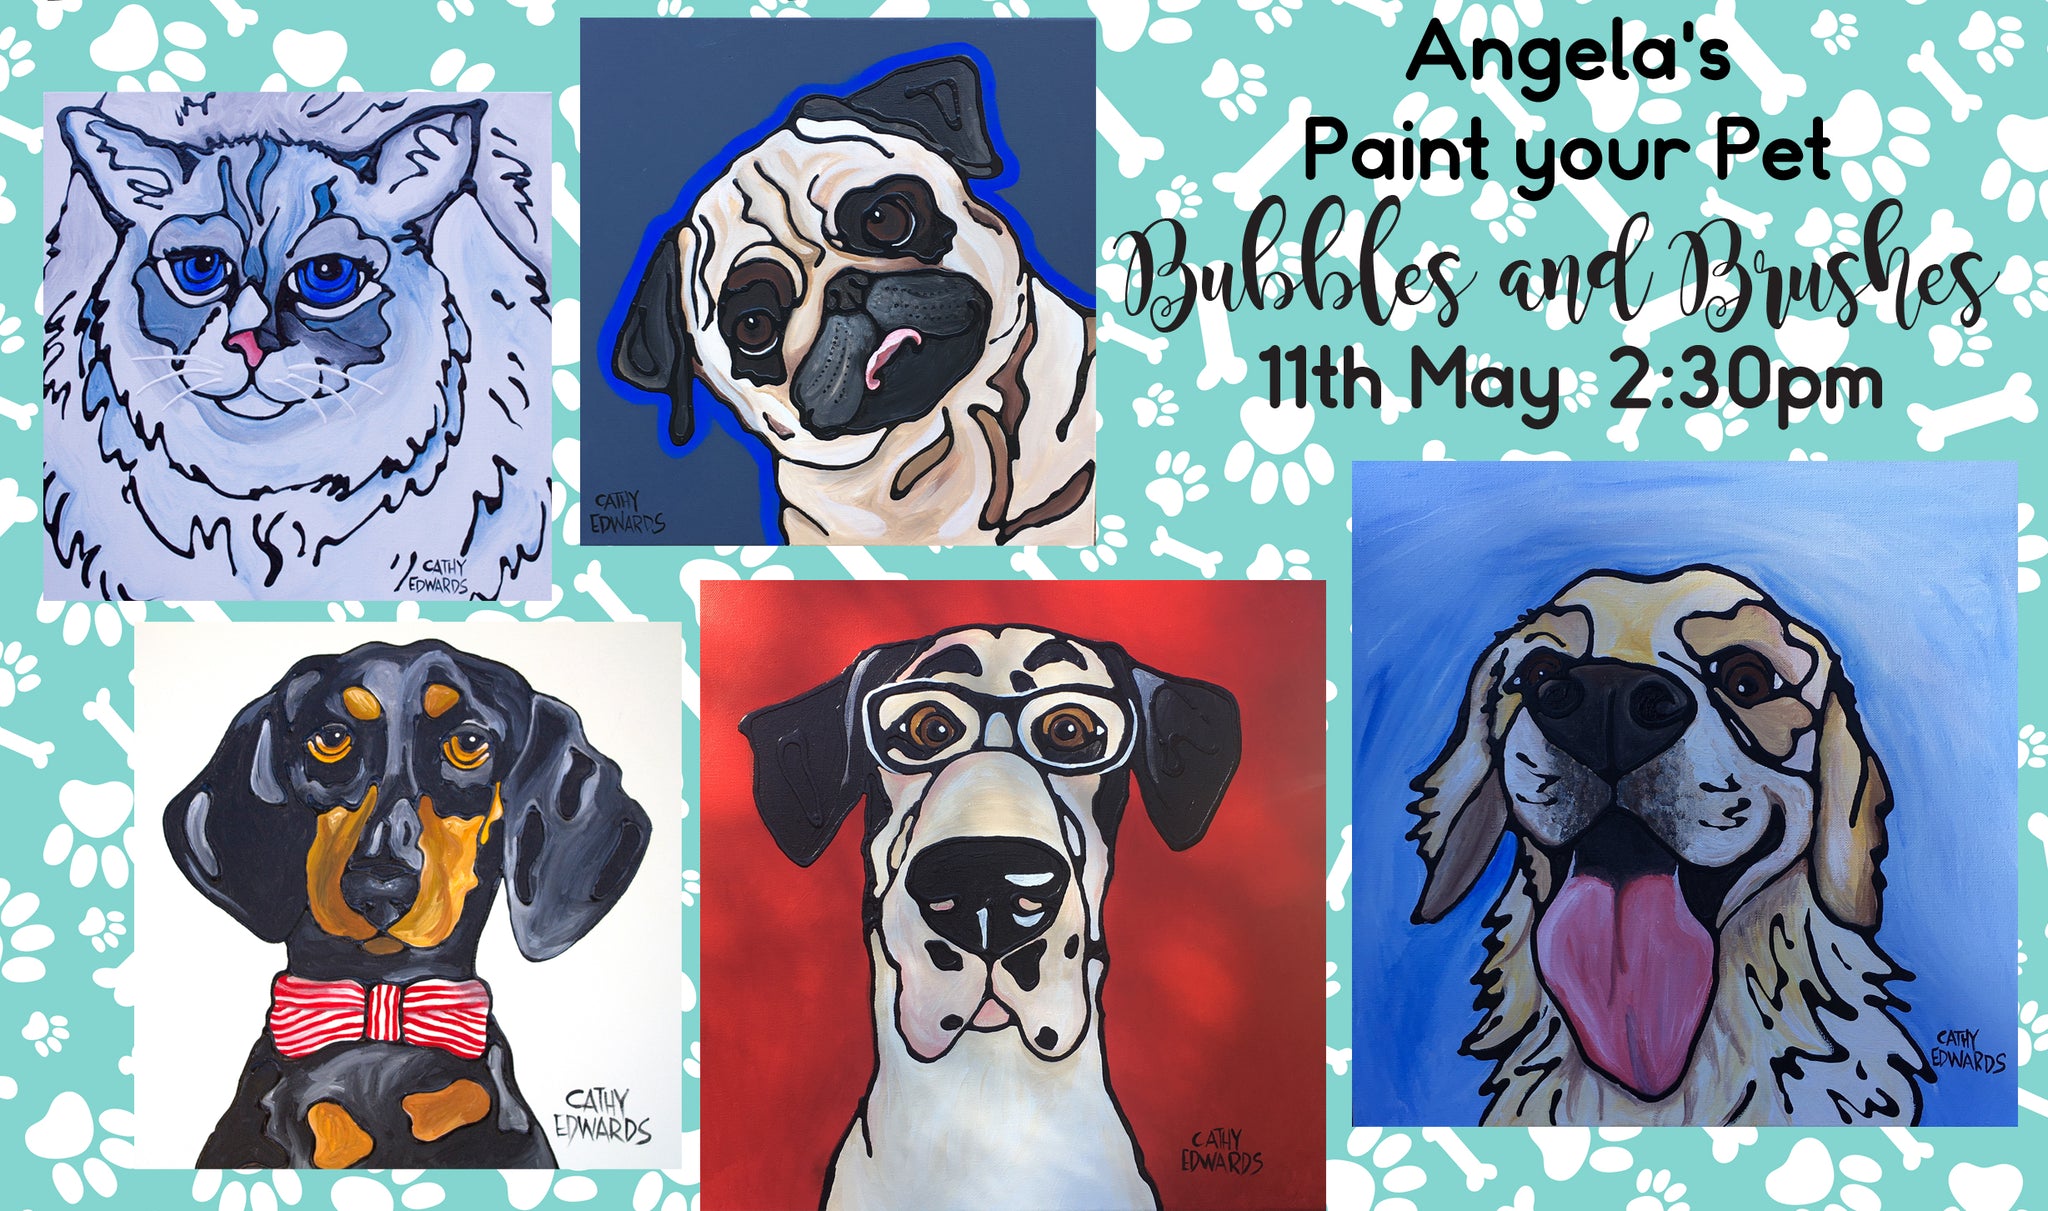 Angela's Paint Your Pet Event